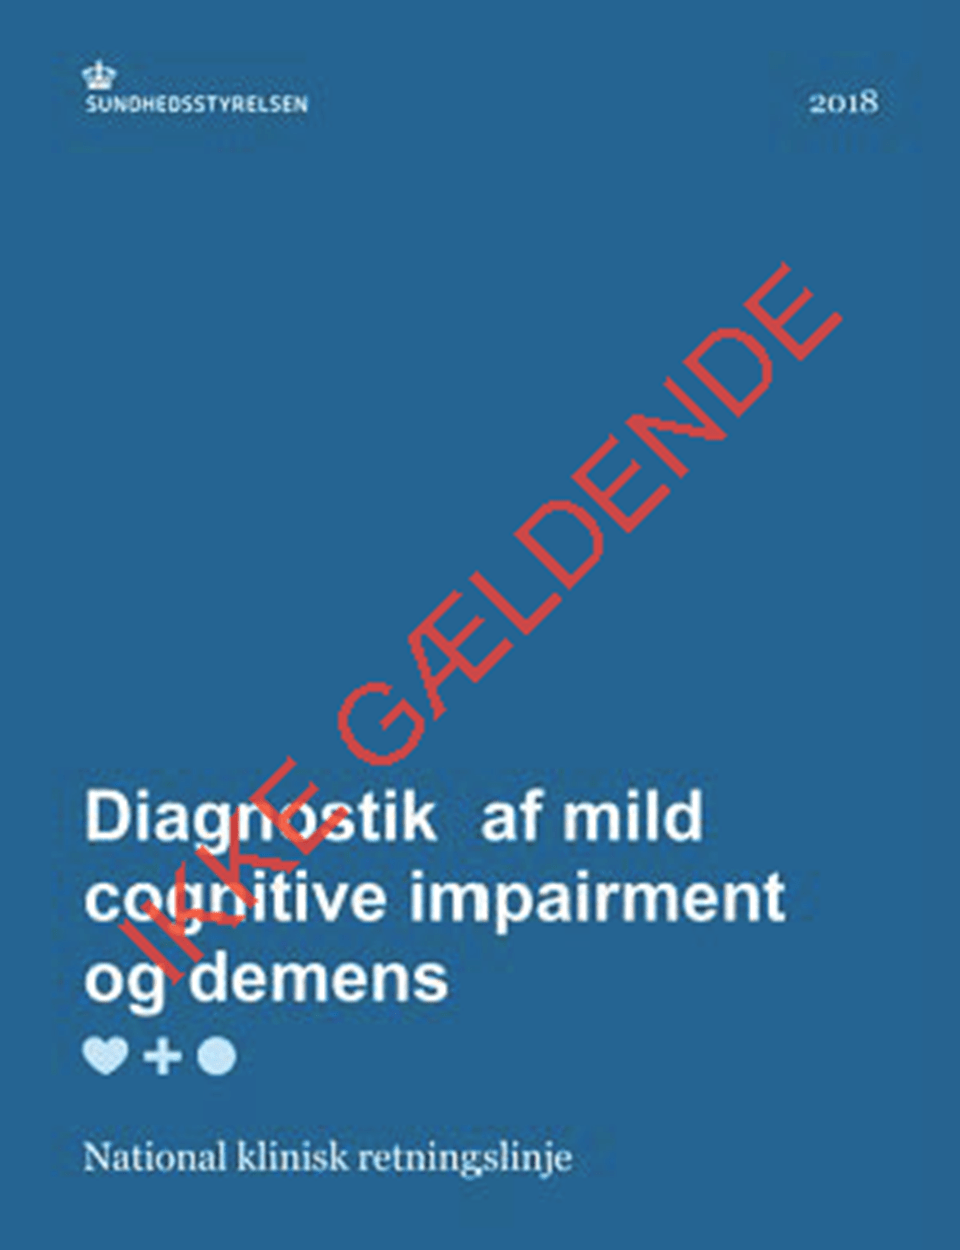 NKR: Diagnostik af mild cognitive impairment og demens - ikke gældende